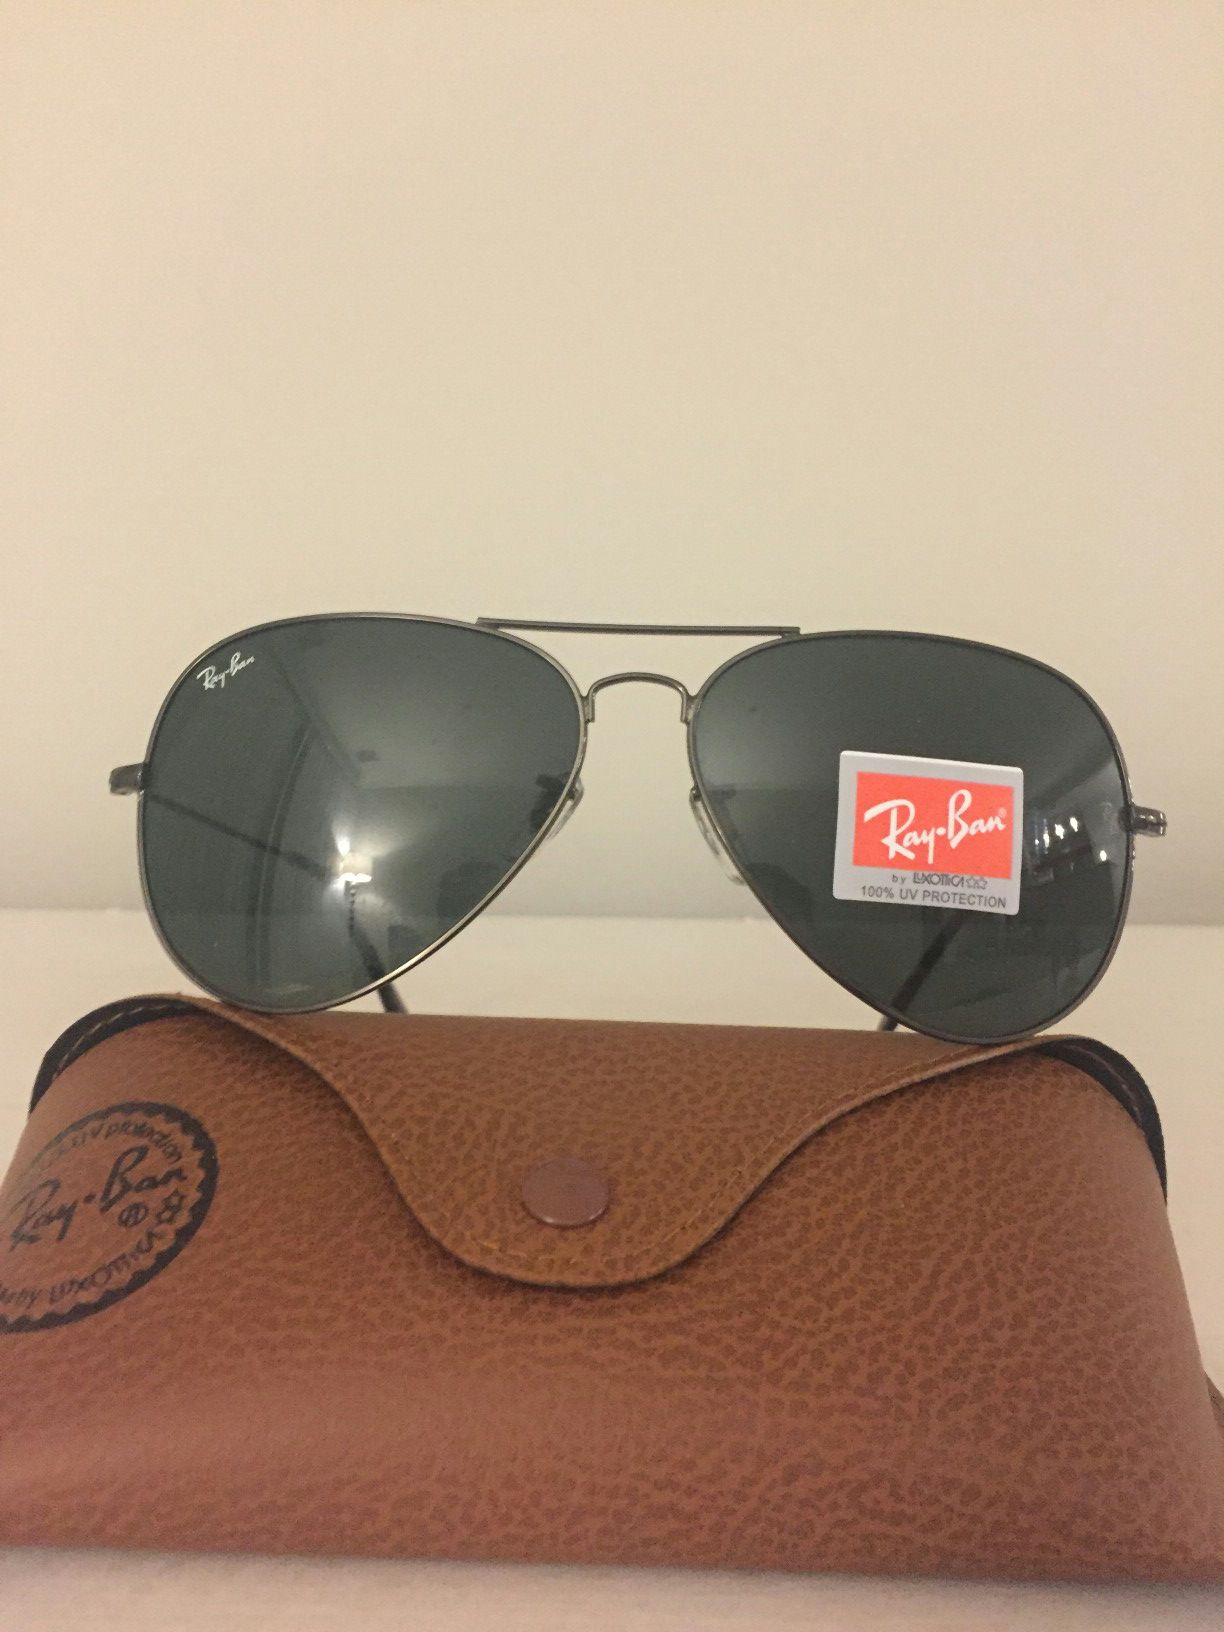 Authentic New RayBan Aviator Sunglasses